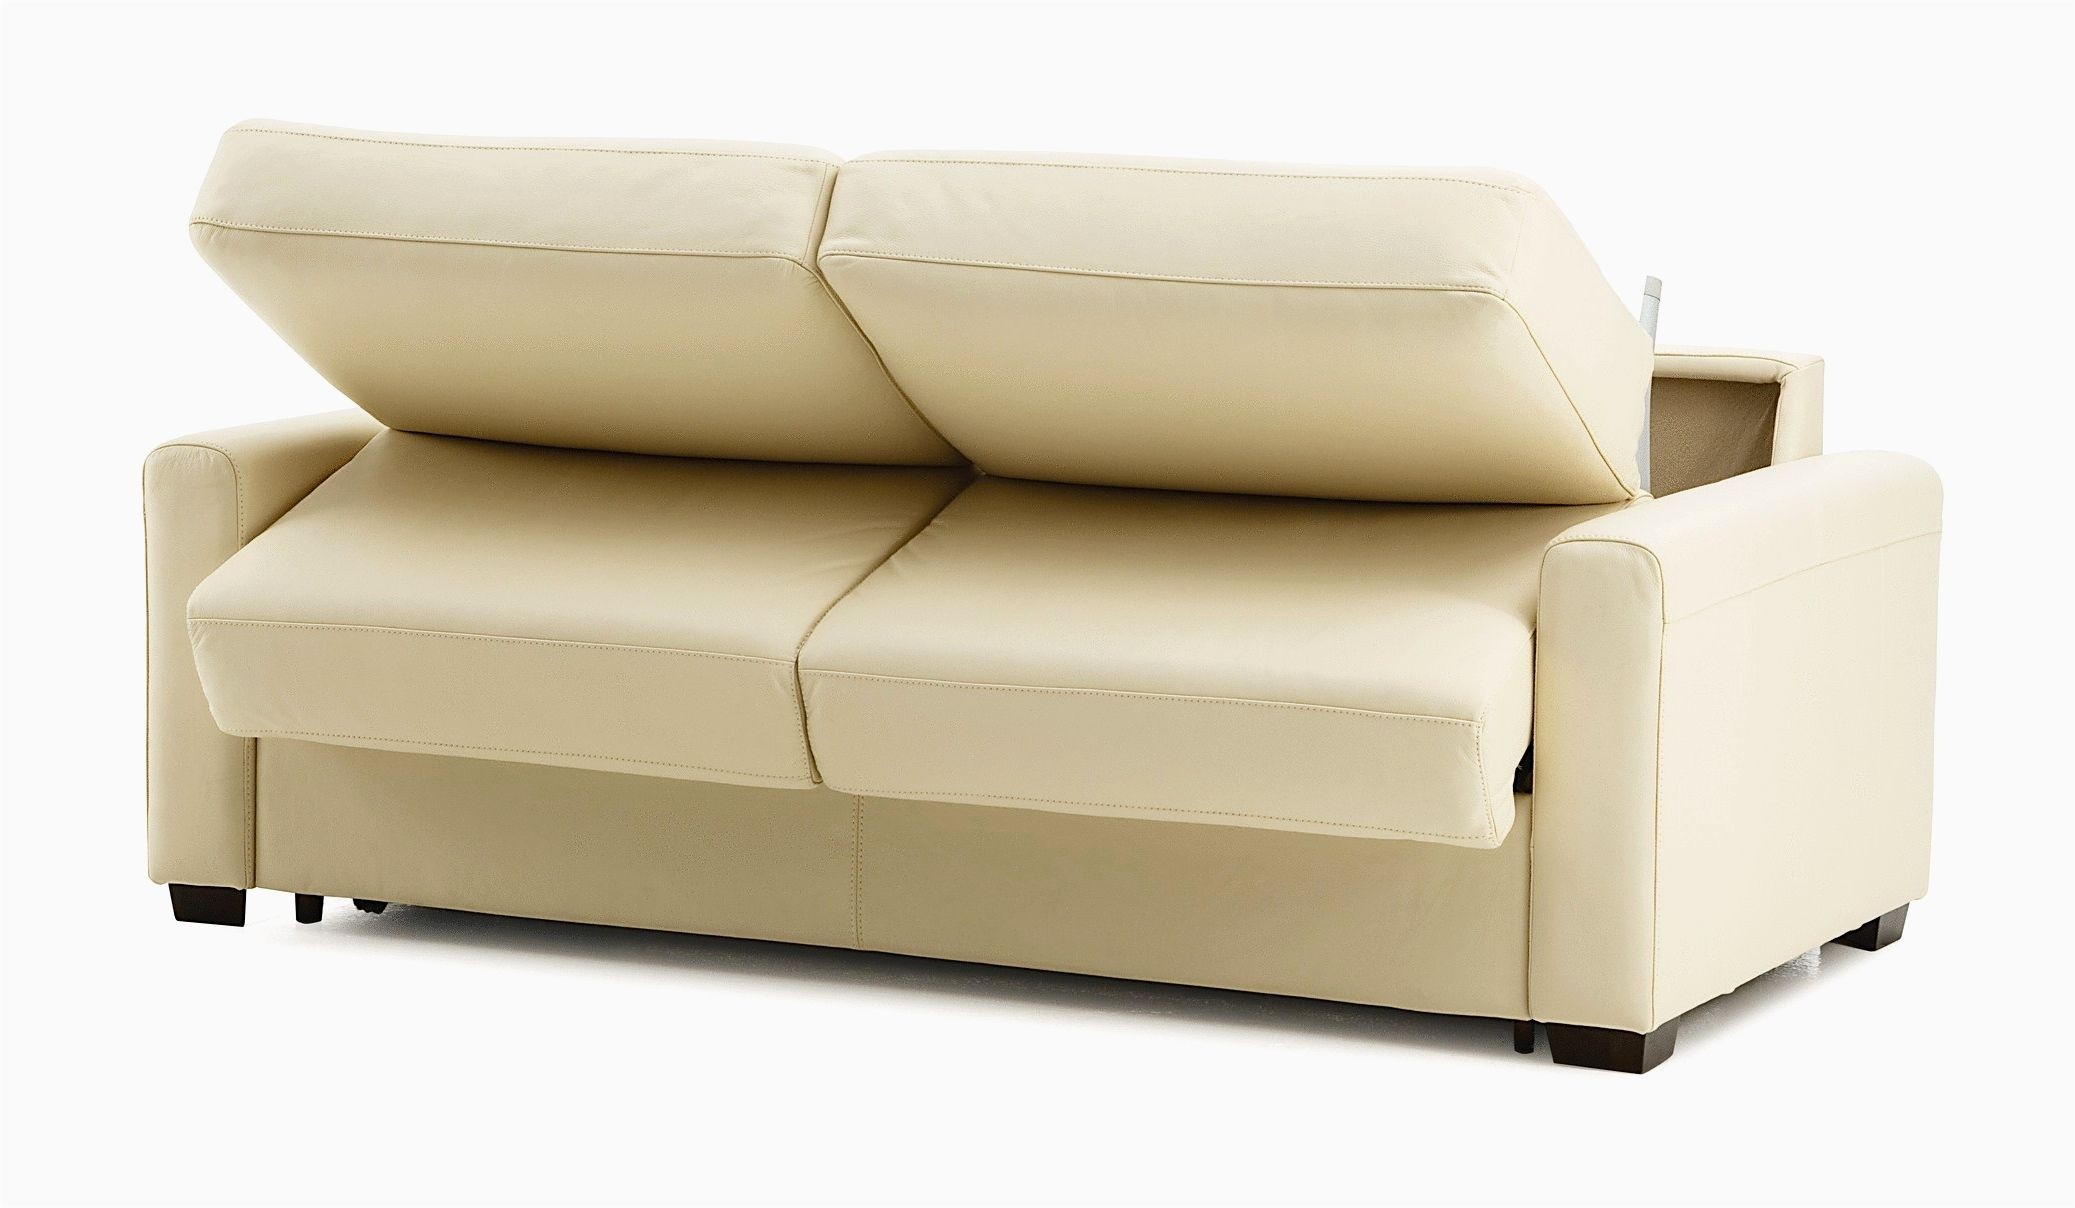 Sensational queen size sofa bed concept modern sofa